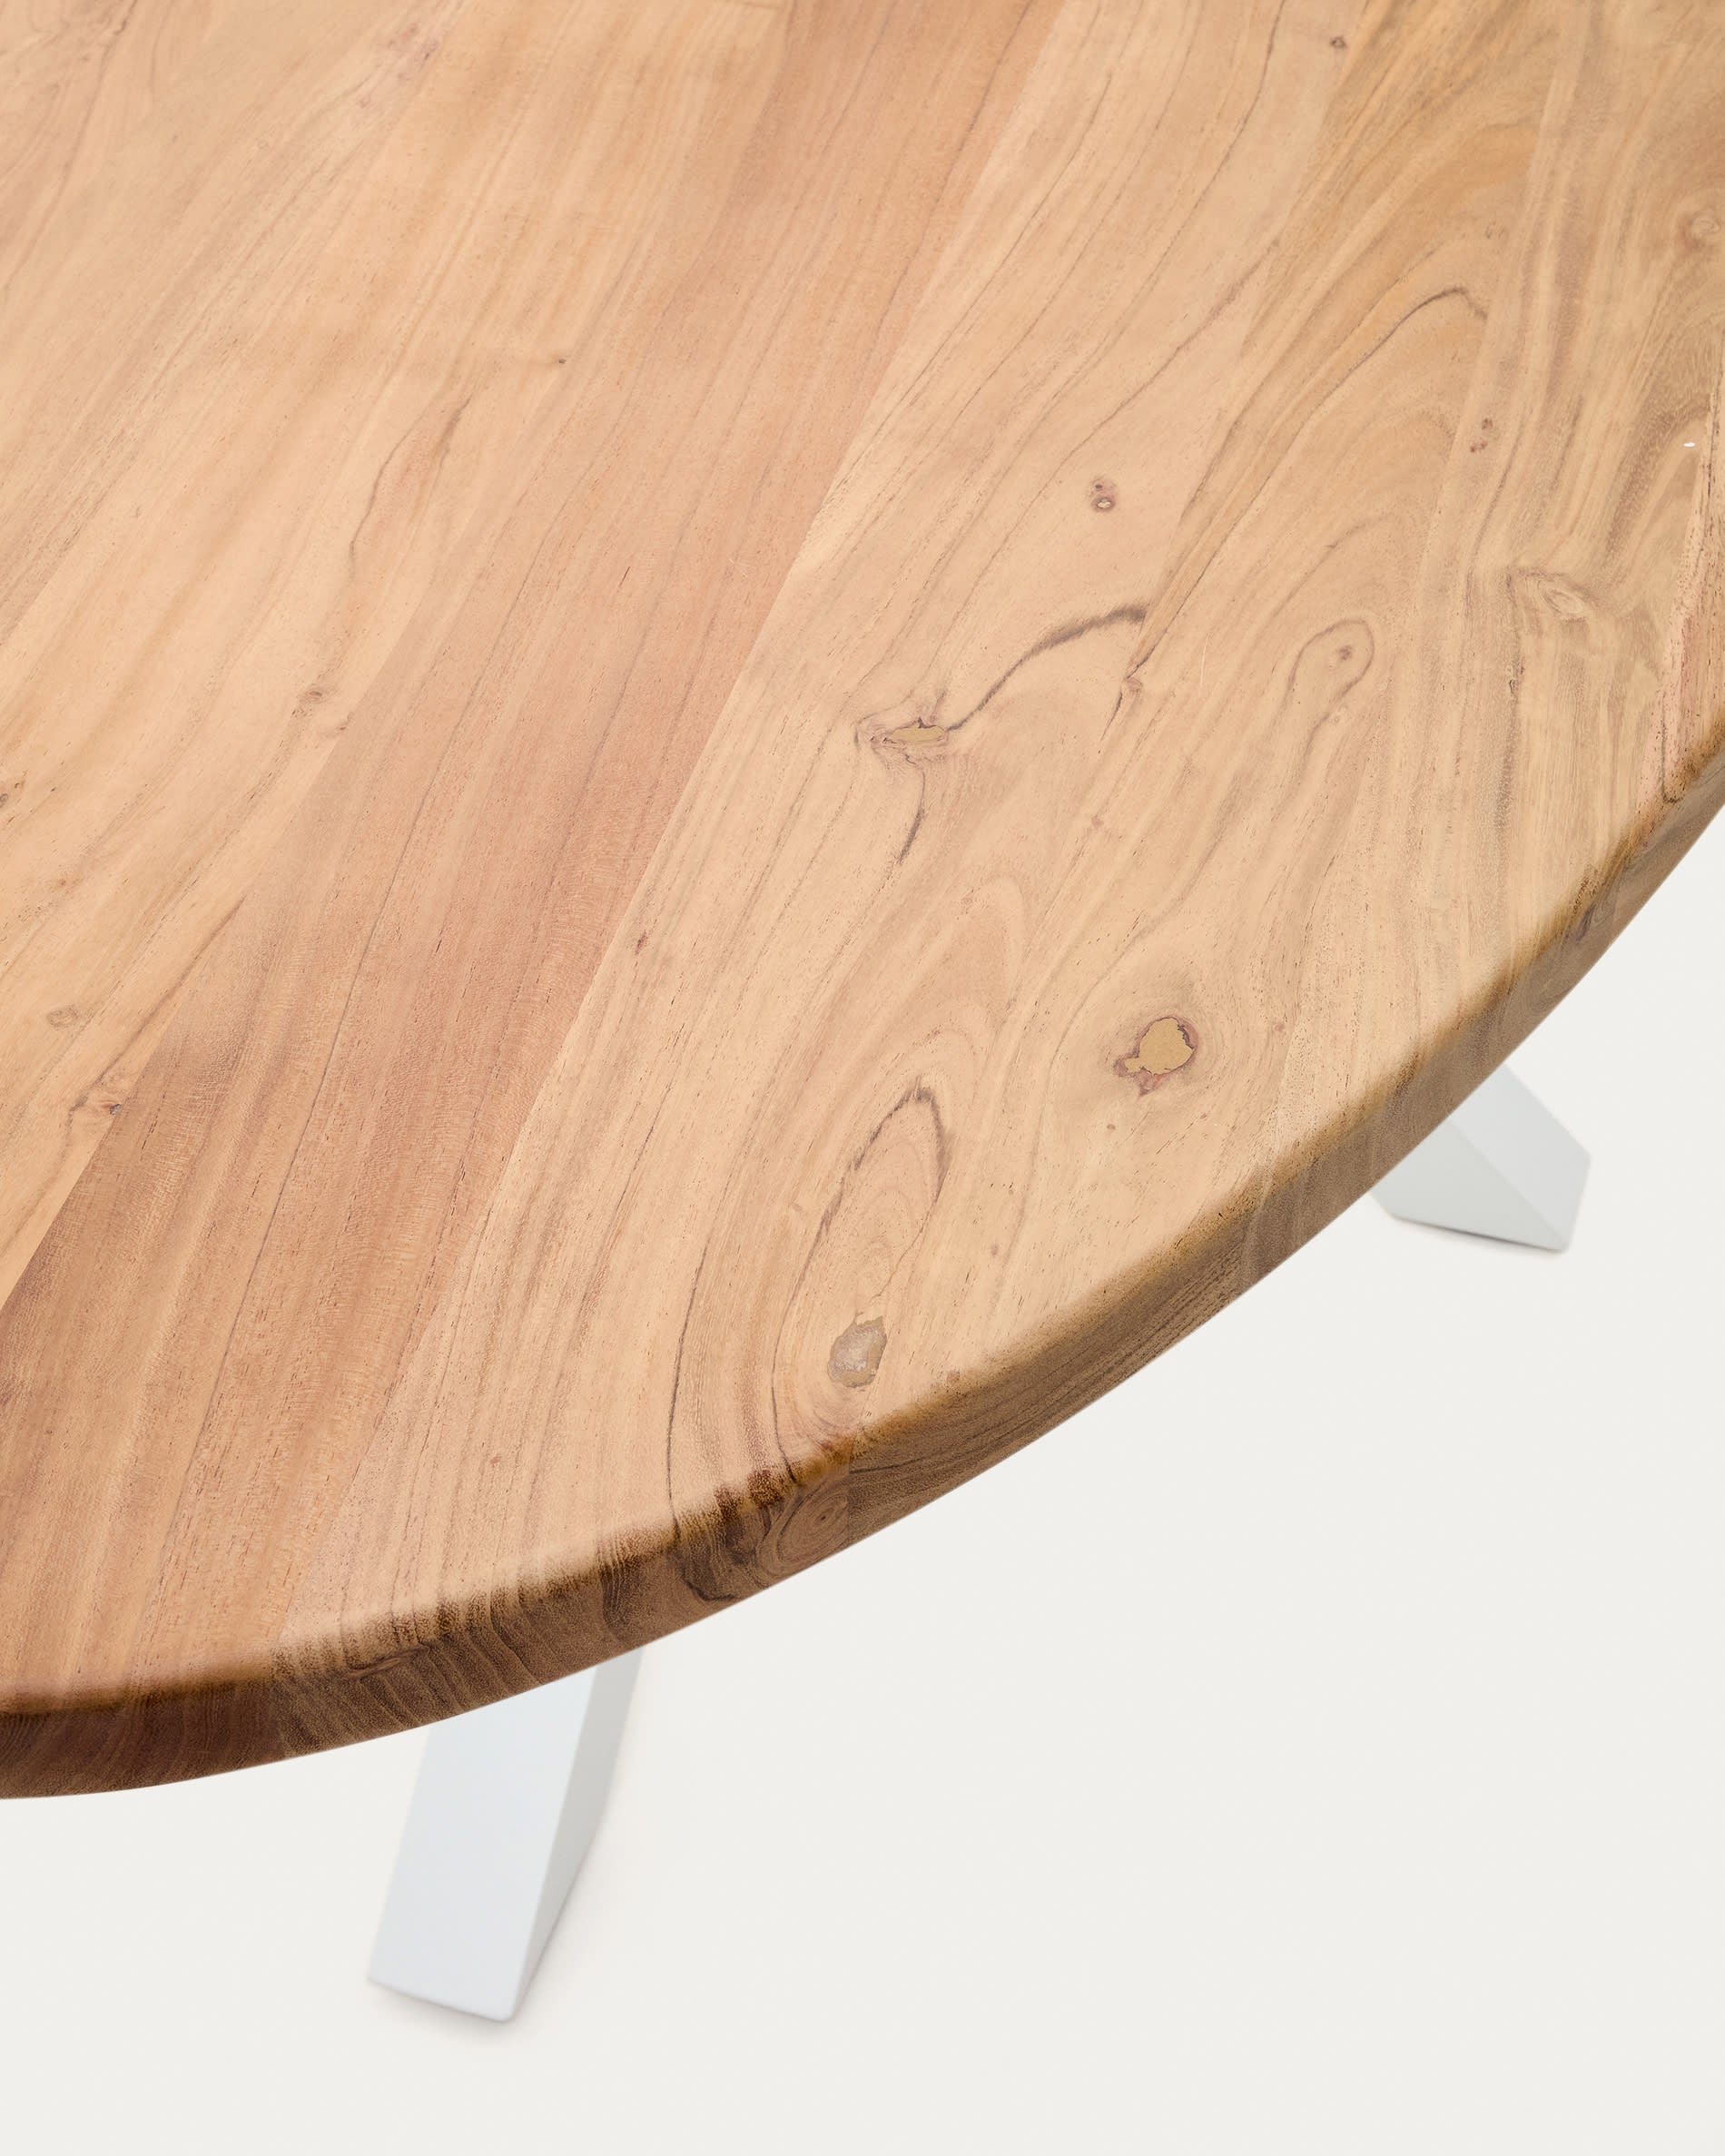 Argo ovális asztal tömör akáciafából és acéllábakkal, fehér befejezéssel Ø 200 x 100 cm